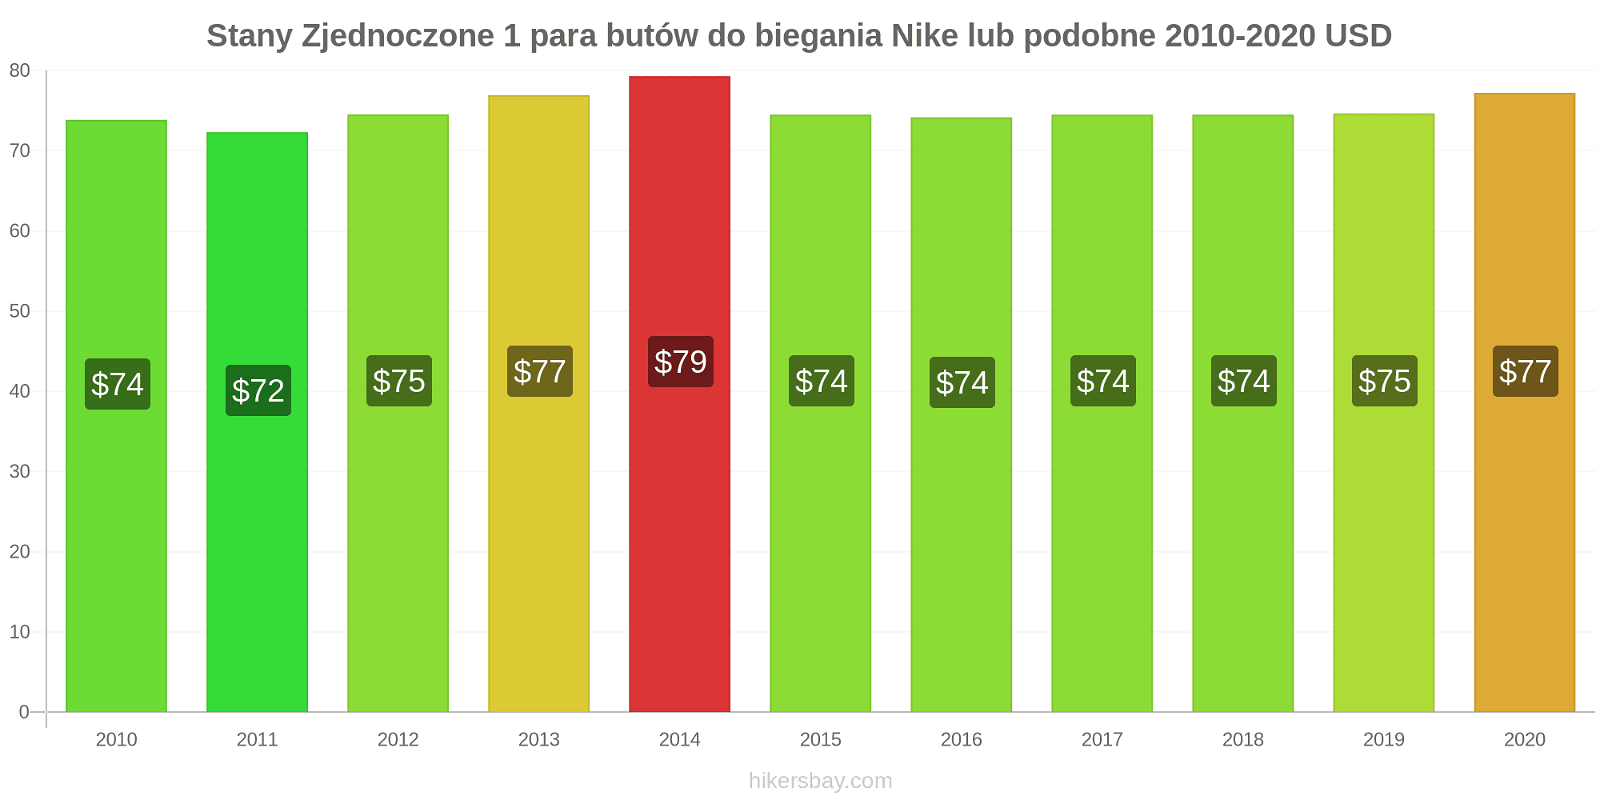 Stany Zjednoczone zmiany cen 1 para butów do biegania Nike lub podobne hikersbay.com